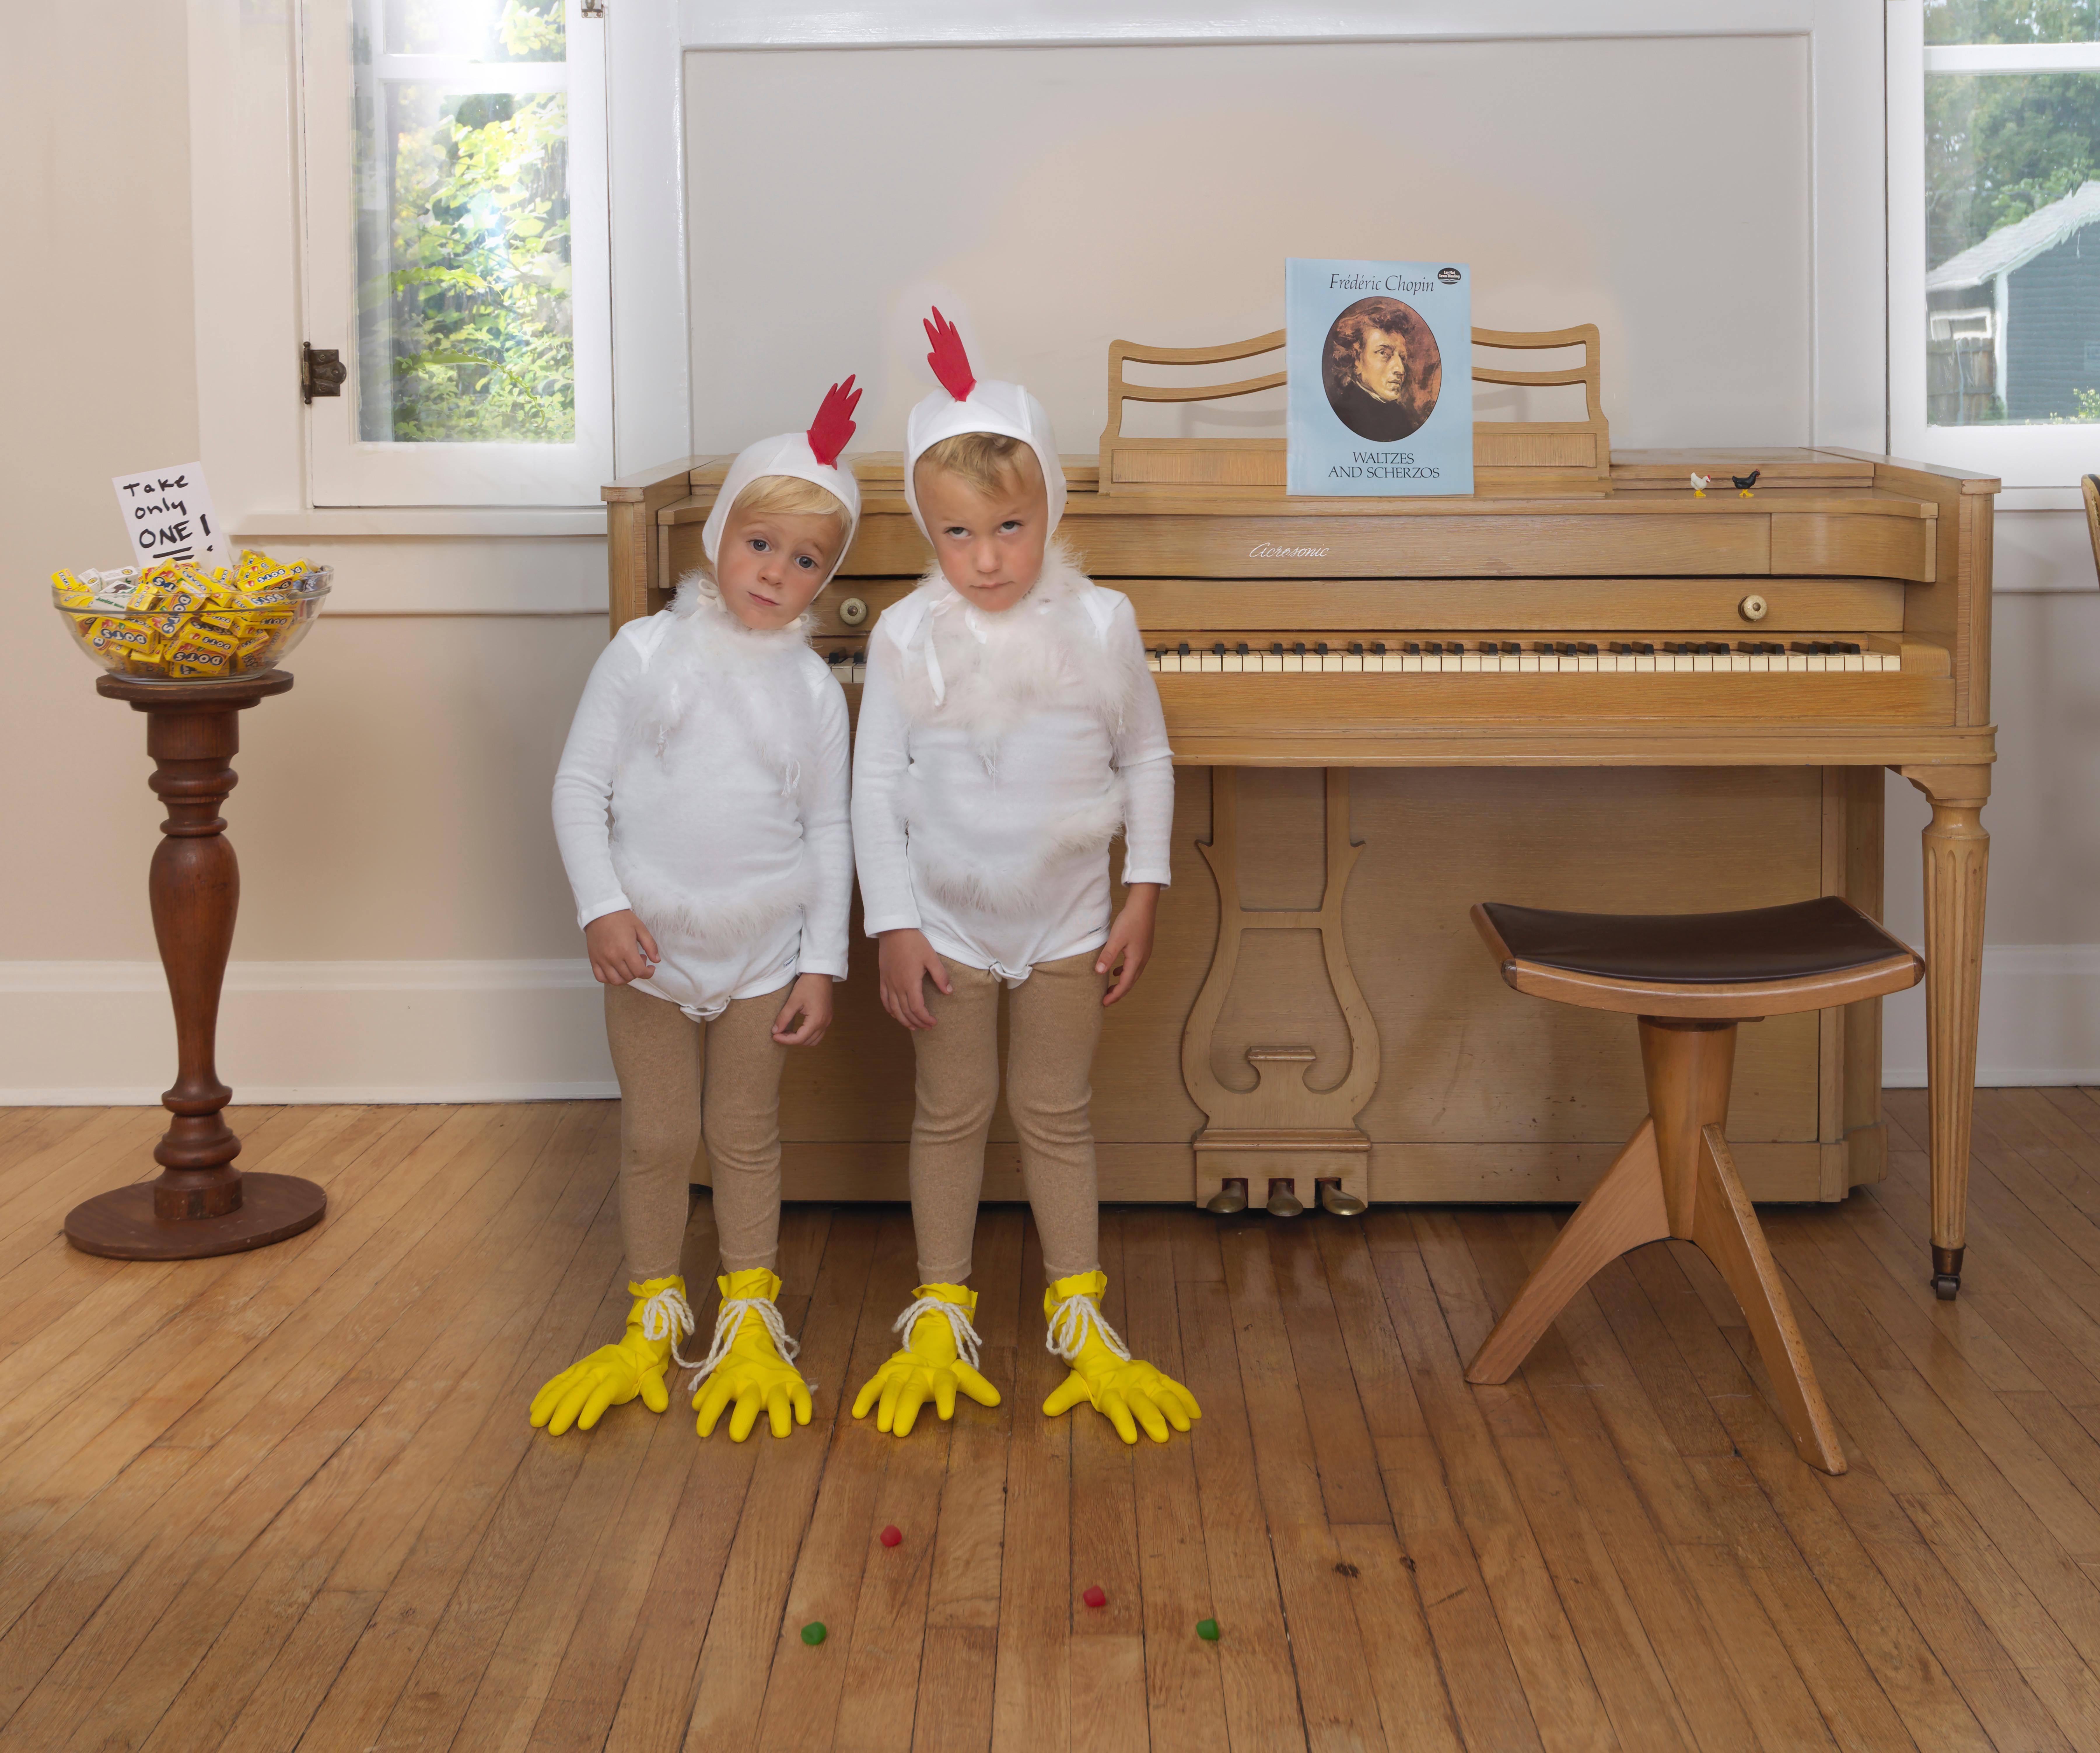 Color Photograph Julie Blackmon - Petits poulets